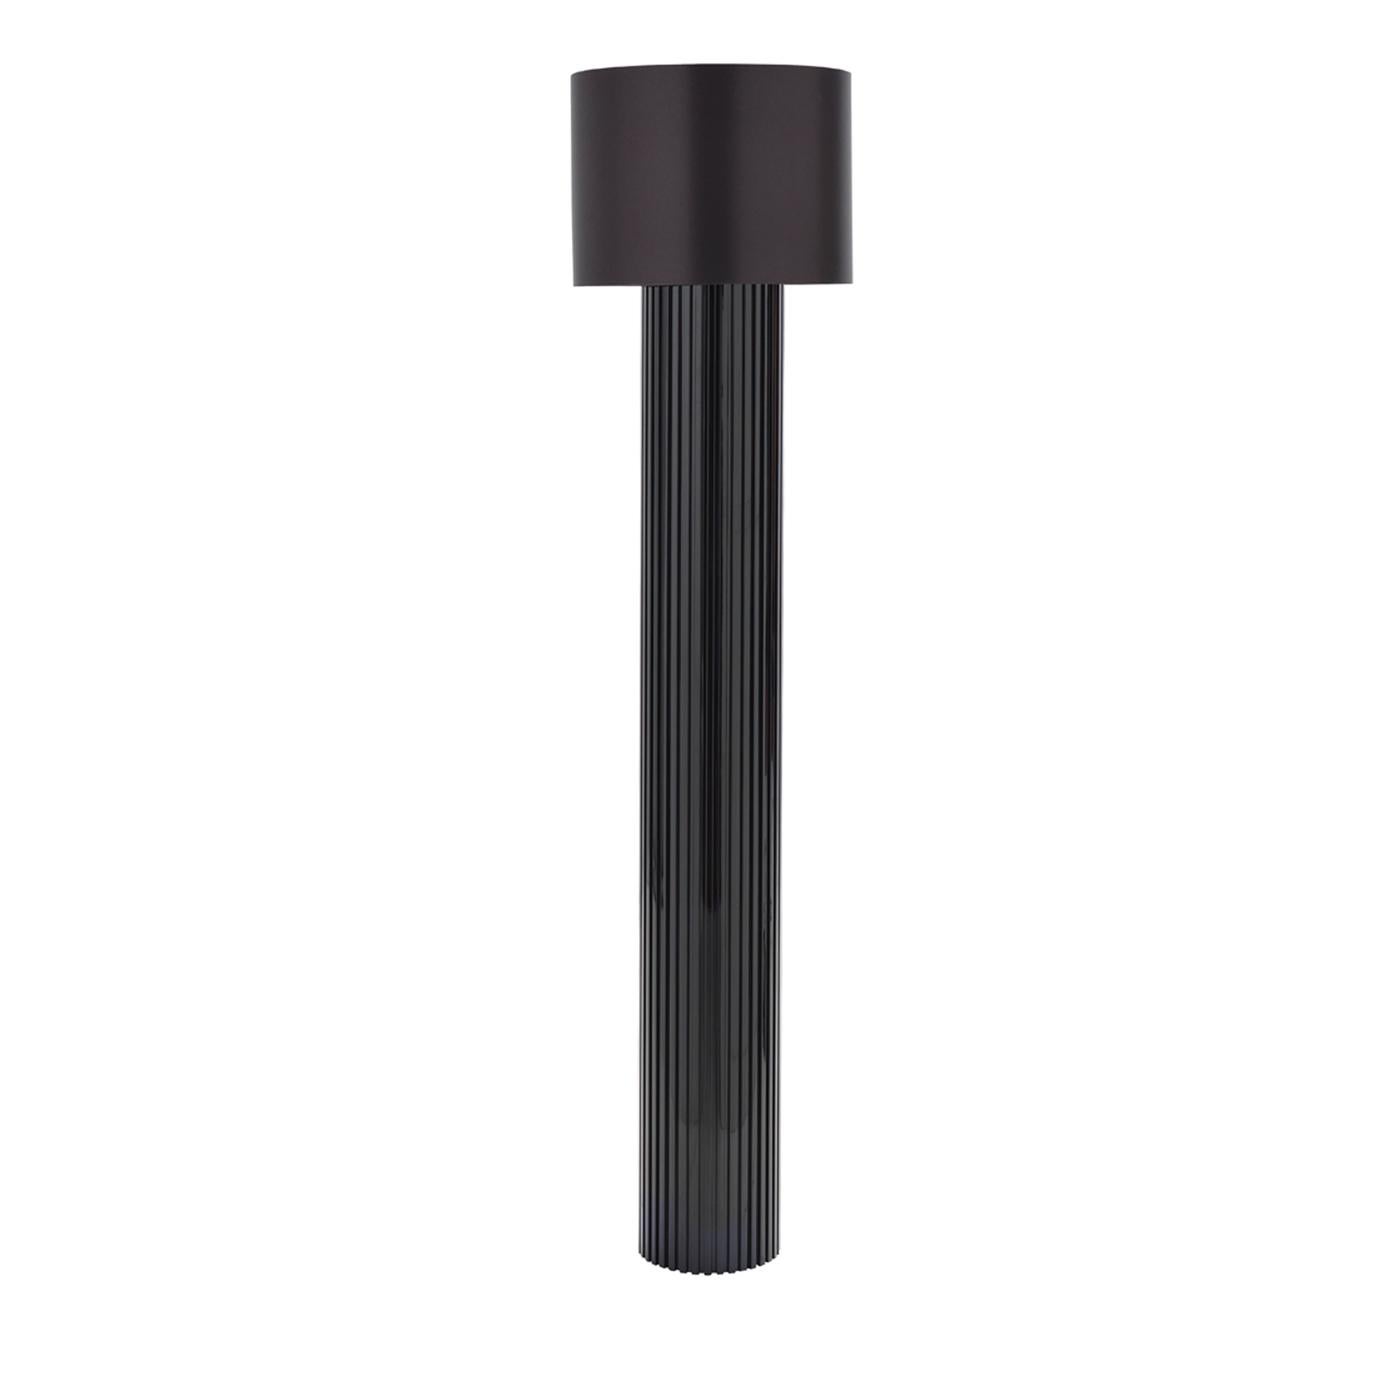 Die runde Stehlampe Black Riga ist ein Triumph der schlichten Formen. Die Stehleuchte zeichnet sich durch ihren stabilen Holzsockel mit schwarzer Hochglanzoberfläche und Cannetté-Motiv aus. Die Leuchte wird mit einem seidig glänzenden Stoffschirm